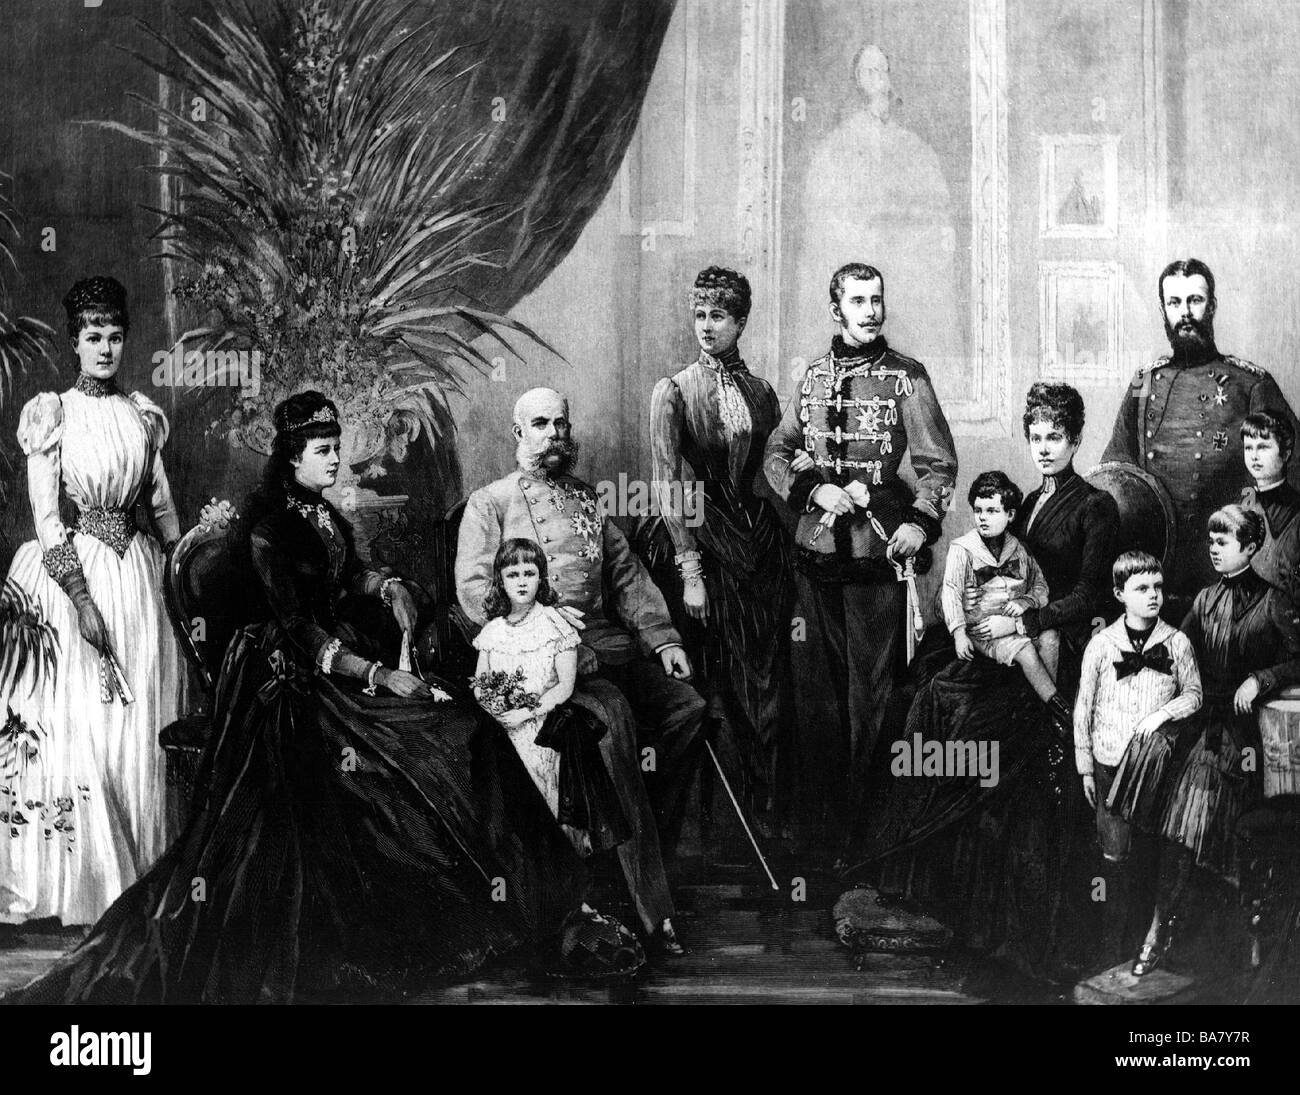 Franz Joseph i, 18.8.1830 - 21.11.1916, imperatore d'Austria dal 1848, con la sua famiglia, incisione in legno dopo disegno di Theodor Volz, 1889, Foto Stock